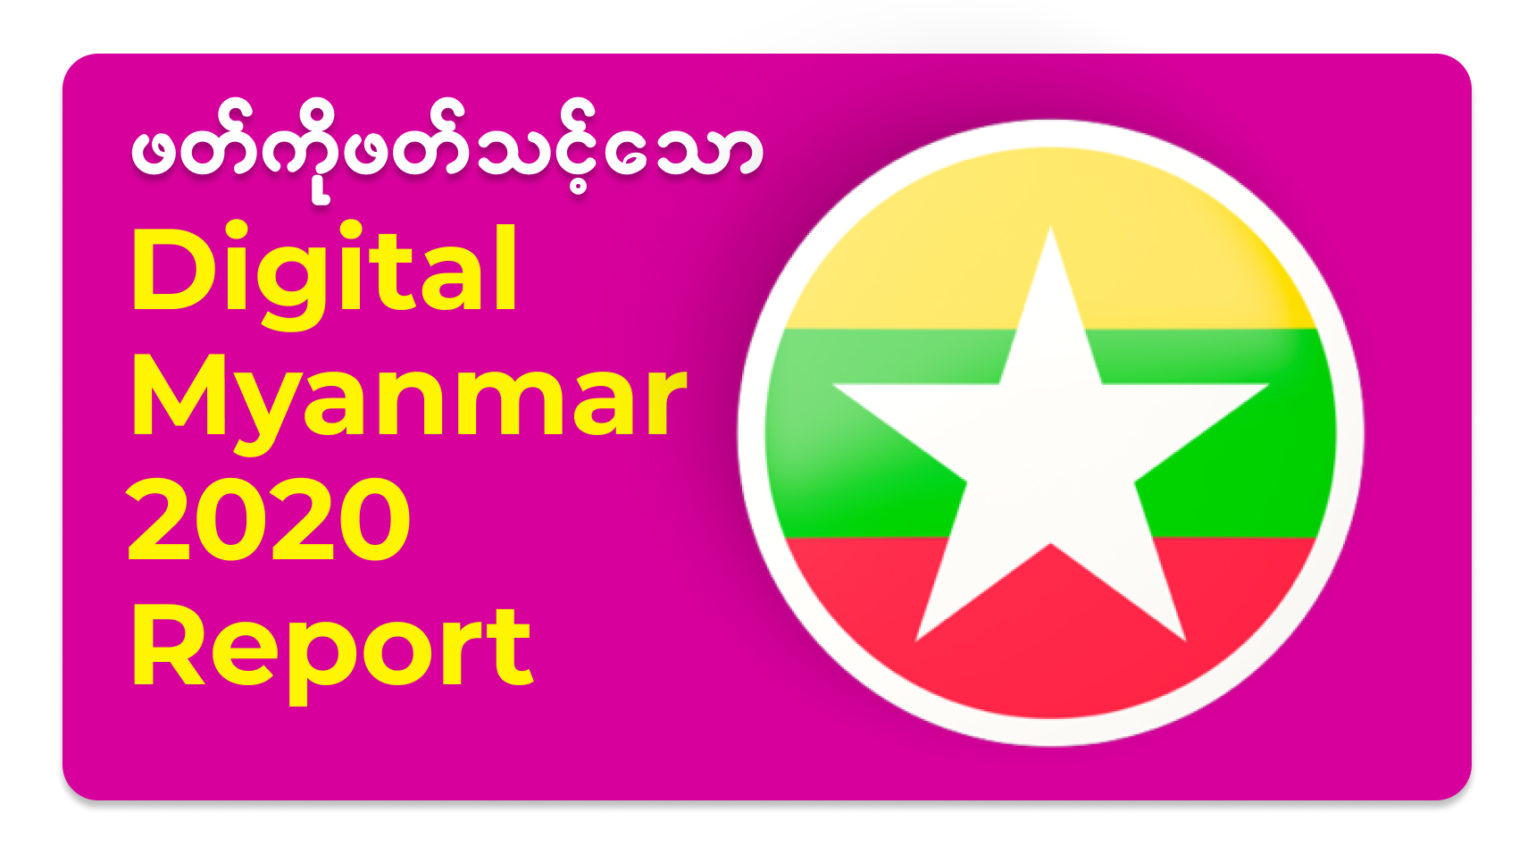 Digital Myanmar 2020 Report